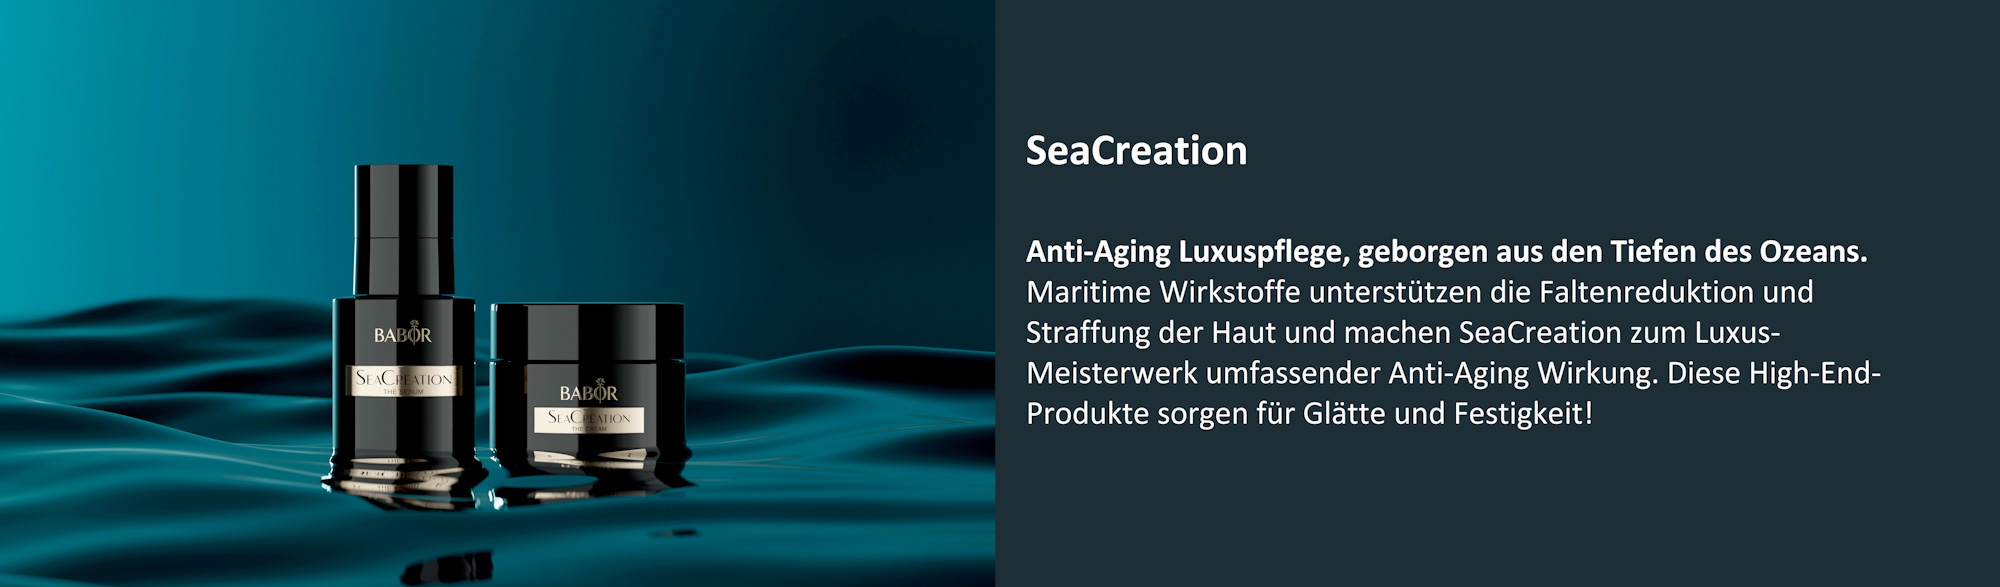 SeaCreation